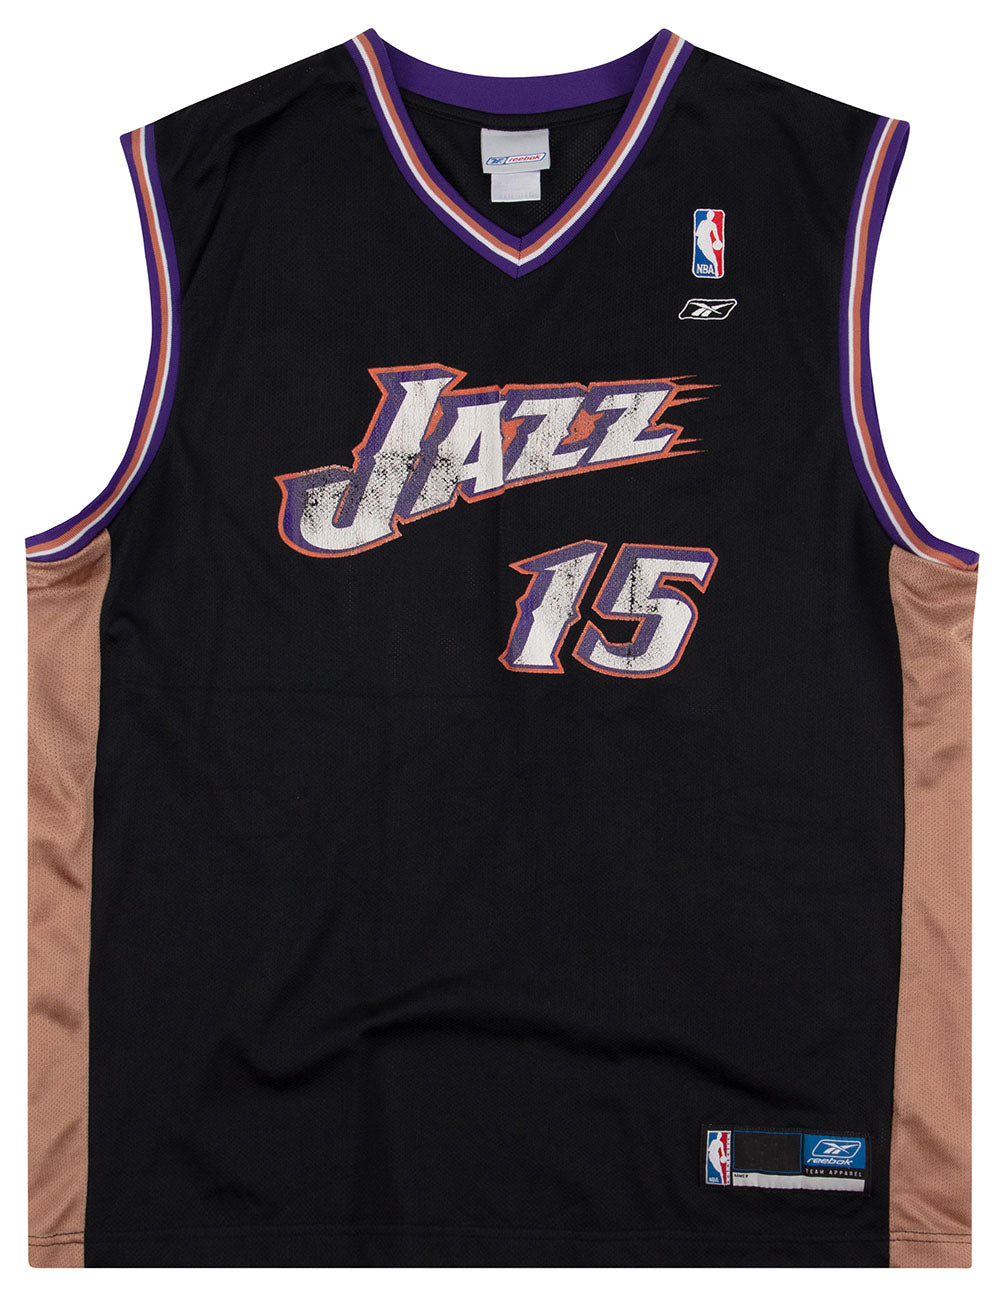 Utah Jazz 2002-2004 Away Jersey